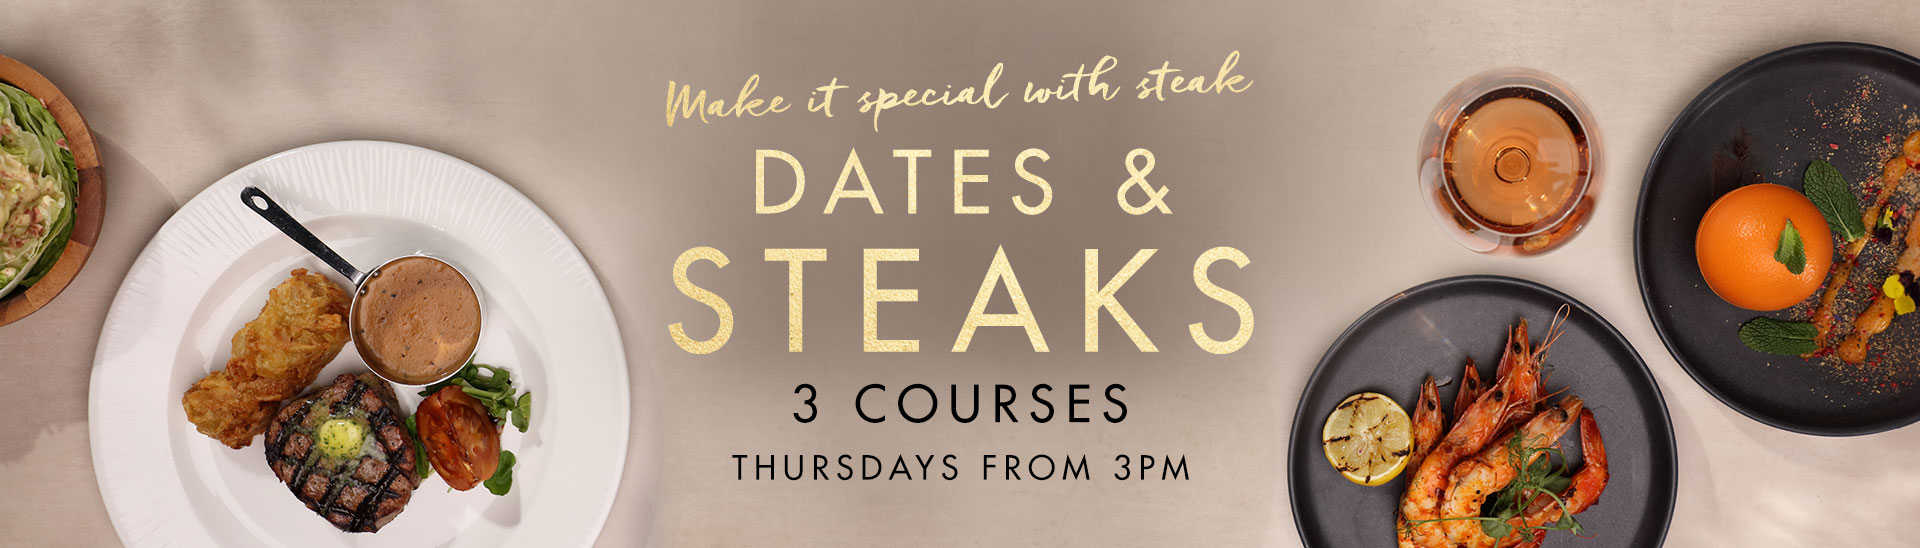 Dates & Steaks at Miller & Carter Brookmans Park